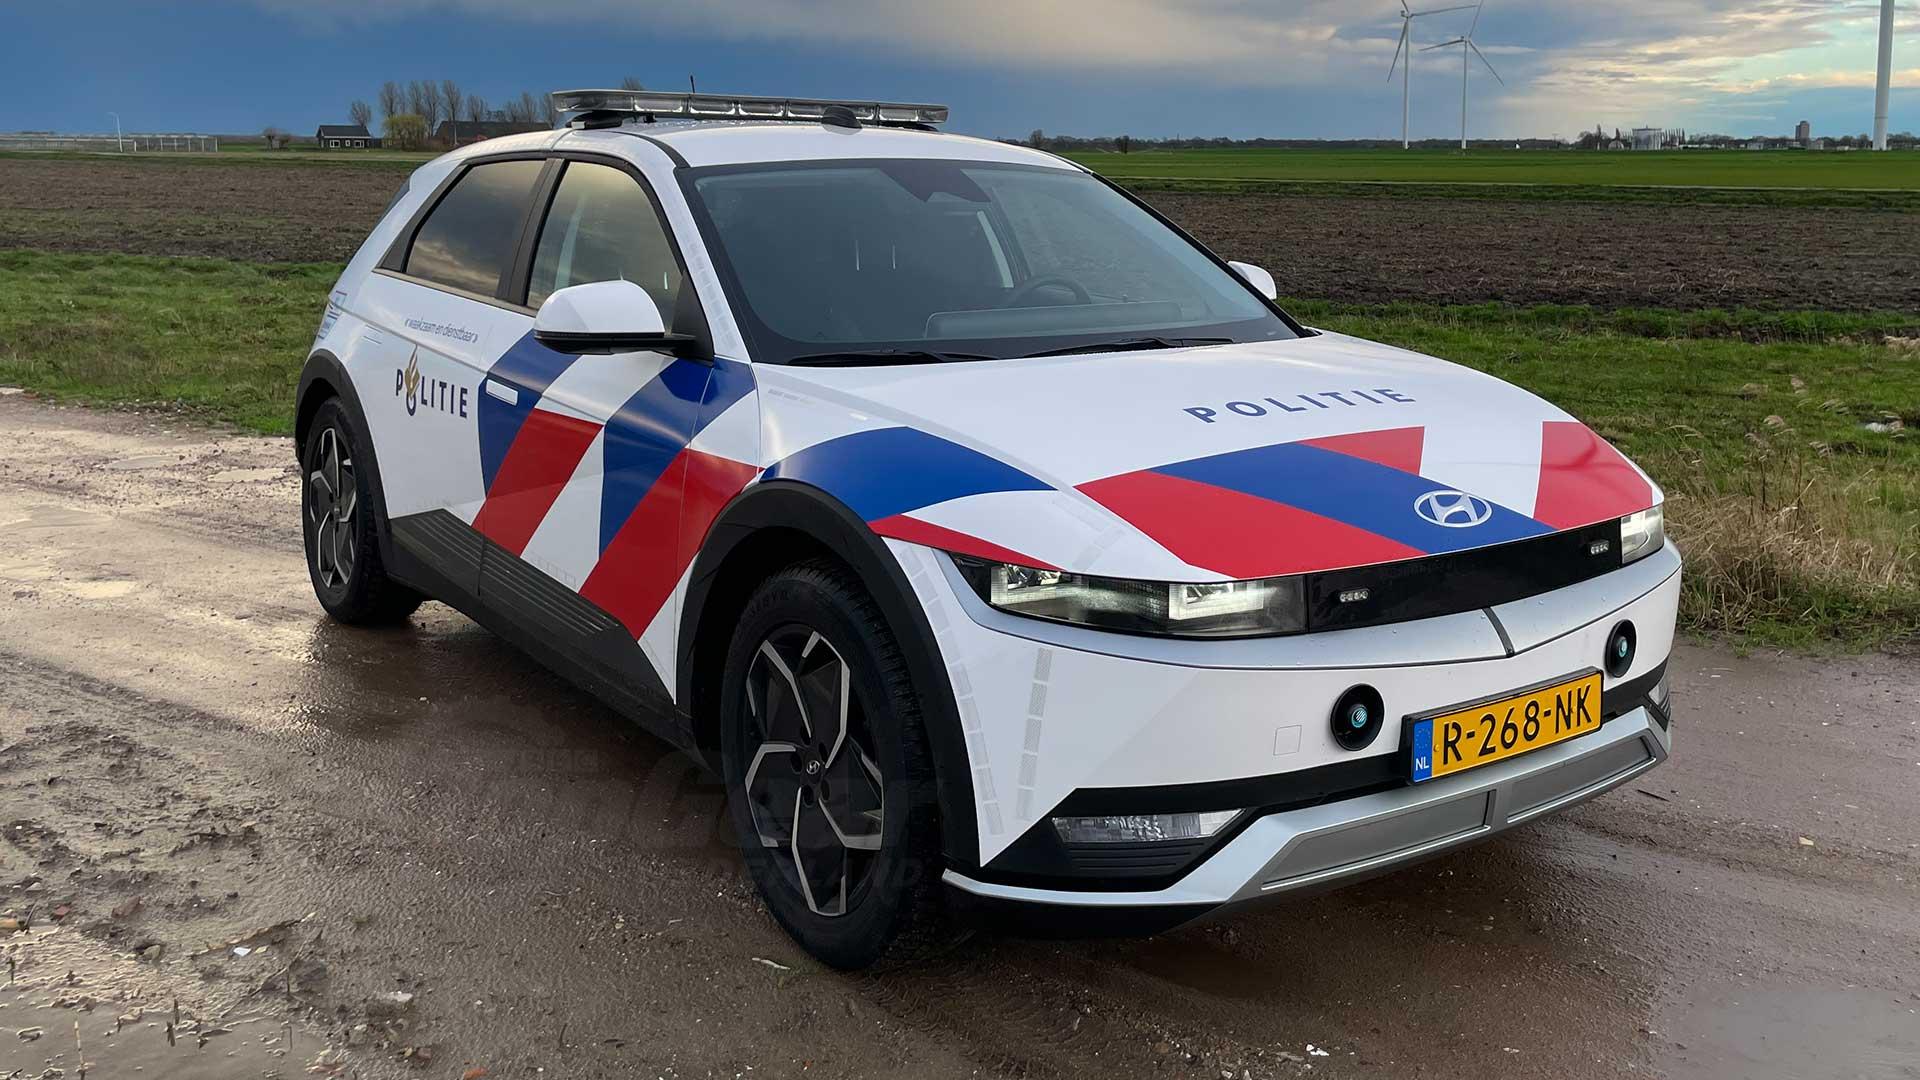 zo zien de nieuwe bmw’s van de nederlandse politie eruit (en zo snel zijn ze)